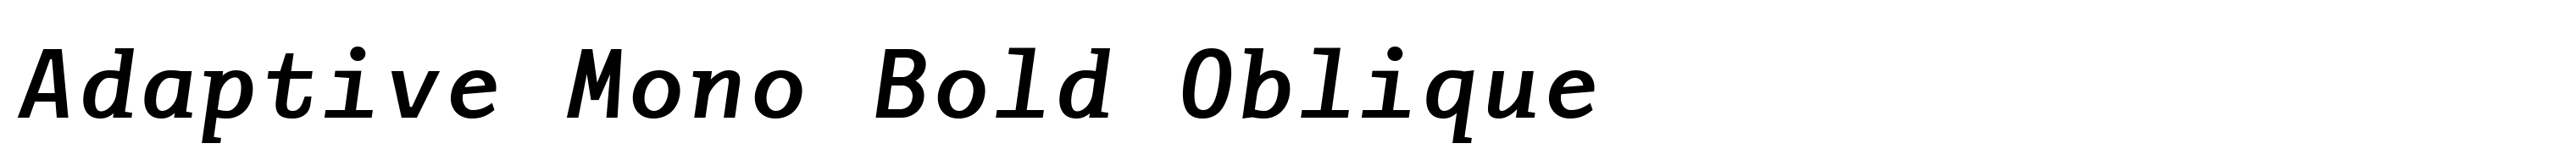 Adaptive Mono Bold Oblique